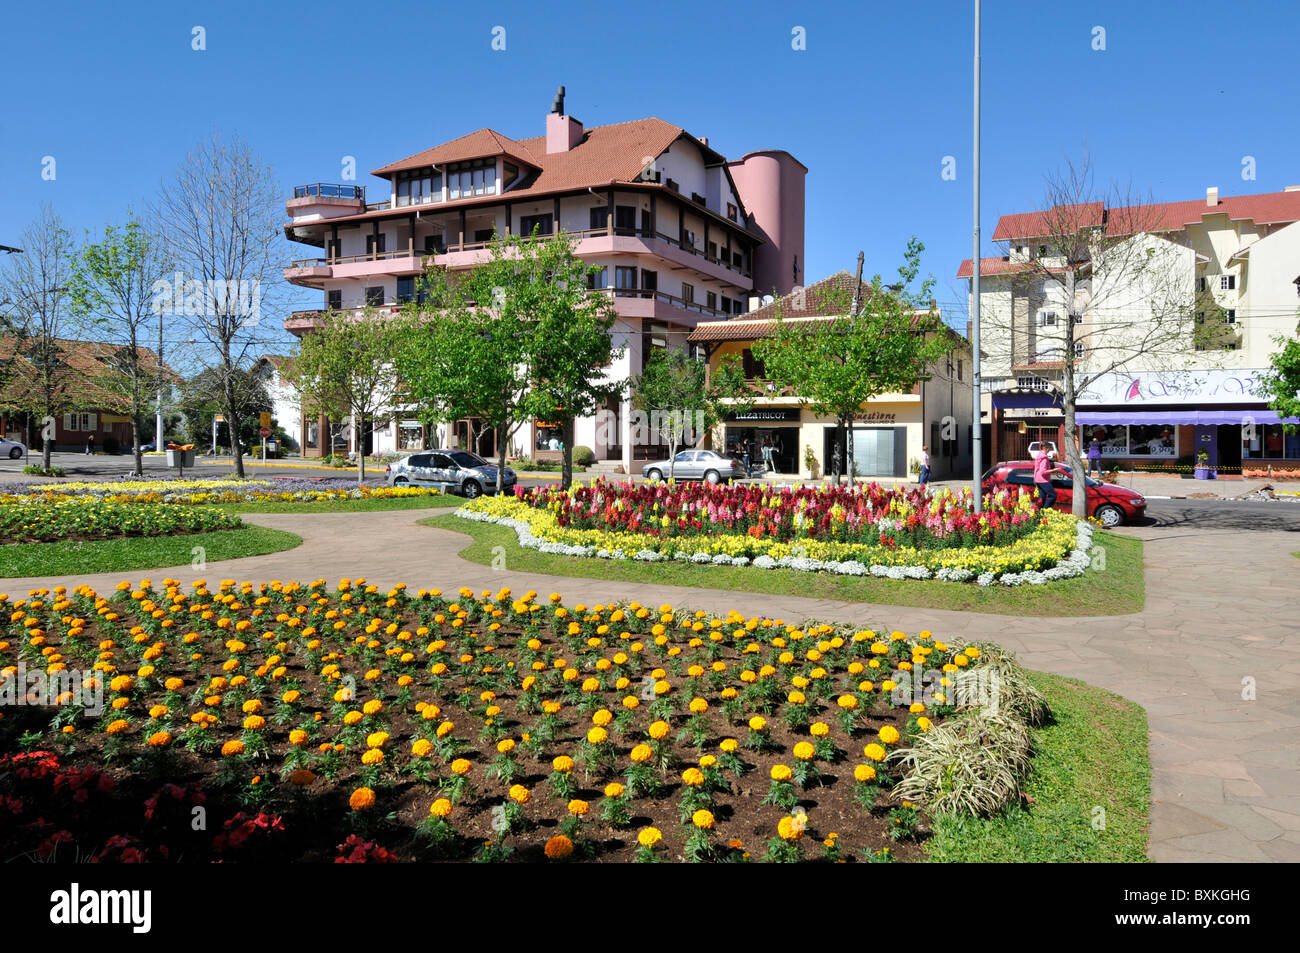 Main square with colorful flower gardens, Nova Petropolis, Rio Grande do Sul, Brazil Stock Photo